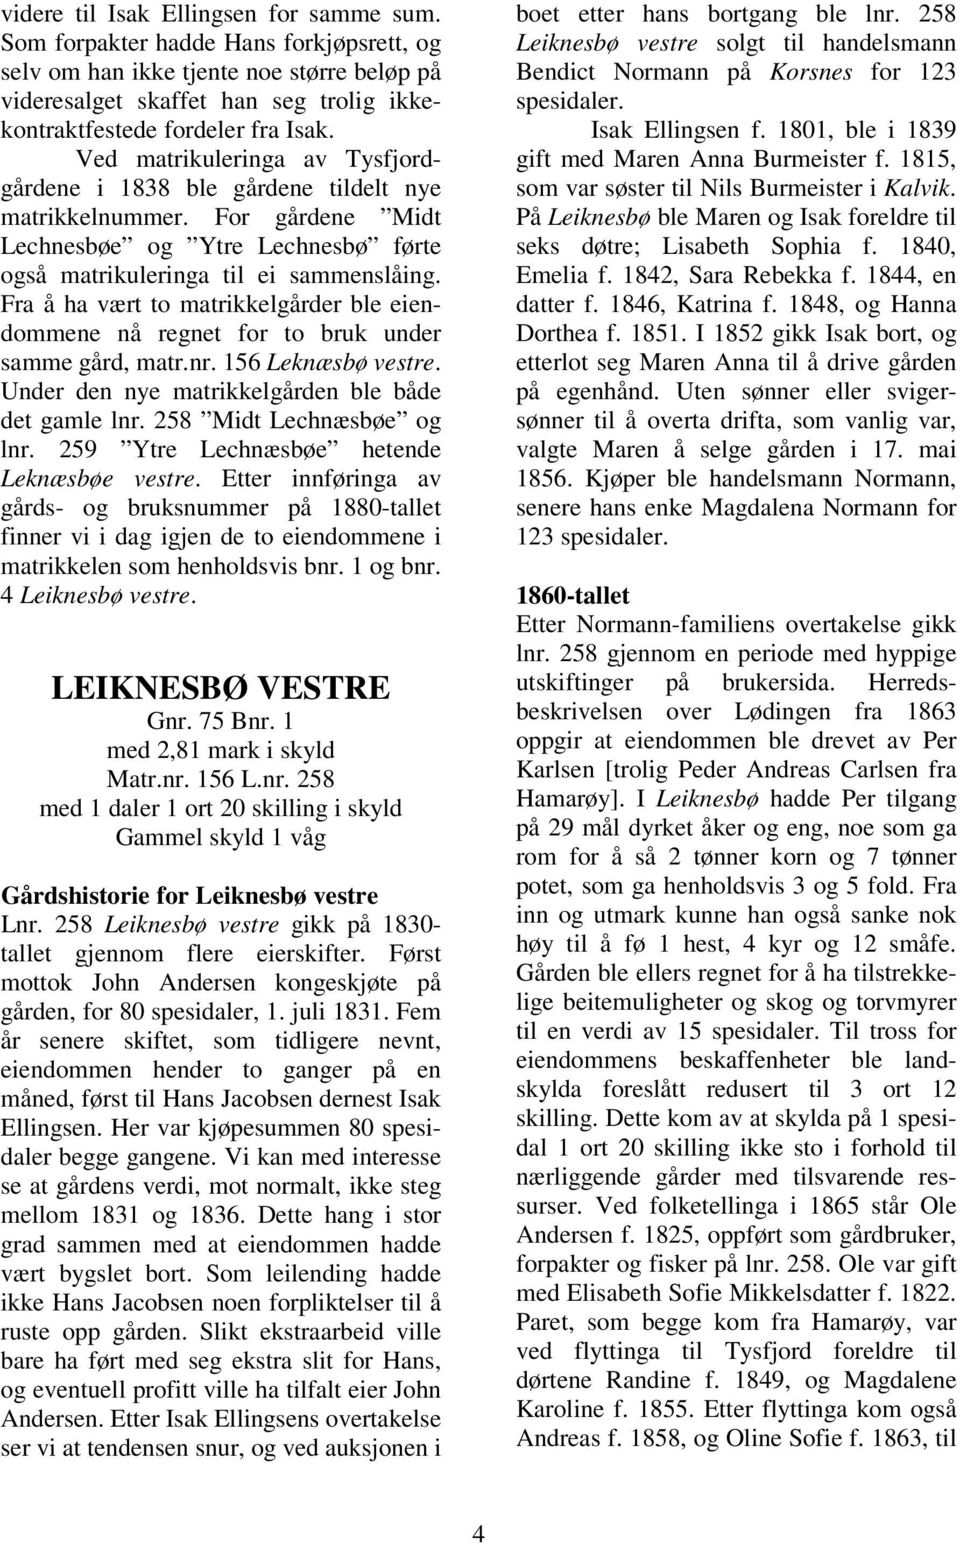 Ved matrikuleringa av Tysfjordgårdene i 1838 ble gårdene tildelt nye matrikkelnummer. For gårdene Midt Lechnesbøe og Ytre Lechnesbø førte også matrikuleringa til ei sammenslåing.